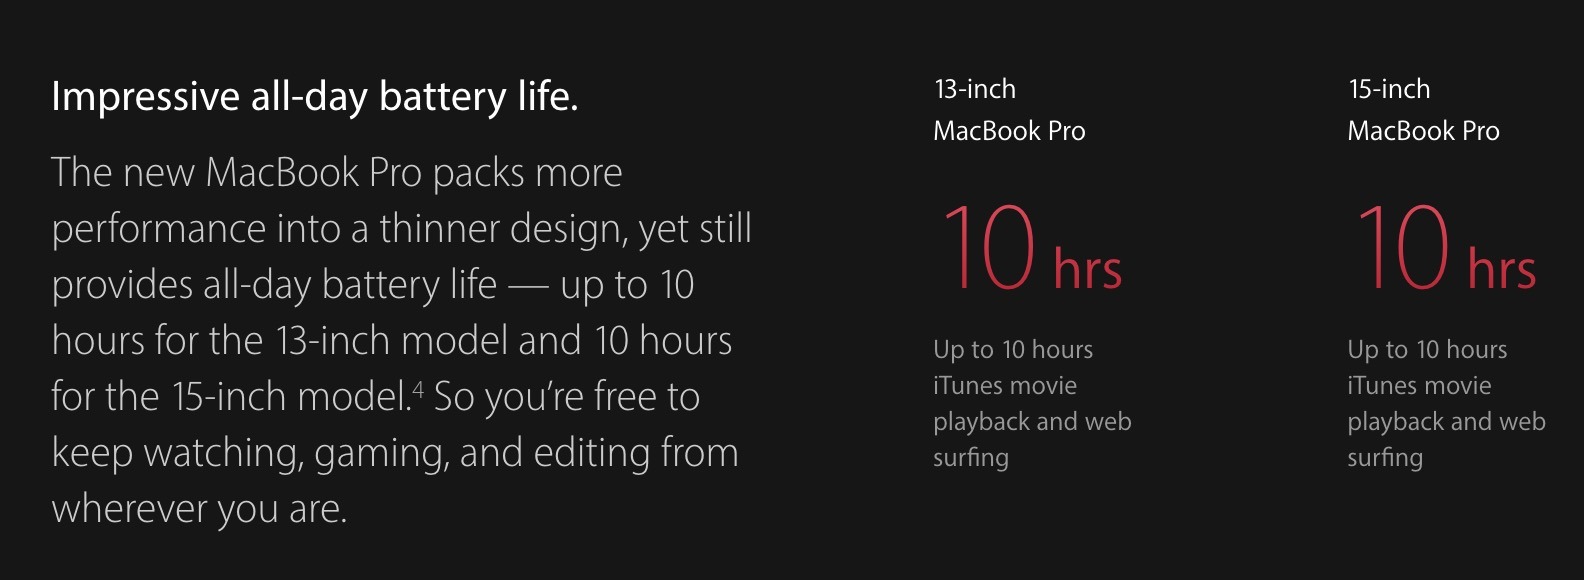 Impressionante durata della batteria tutto il giorno pubblicità MacBook